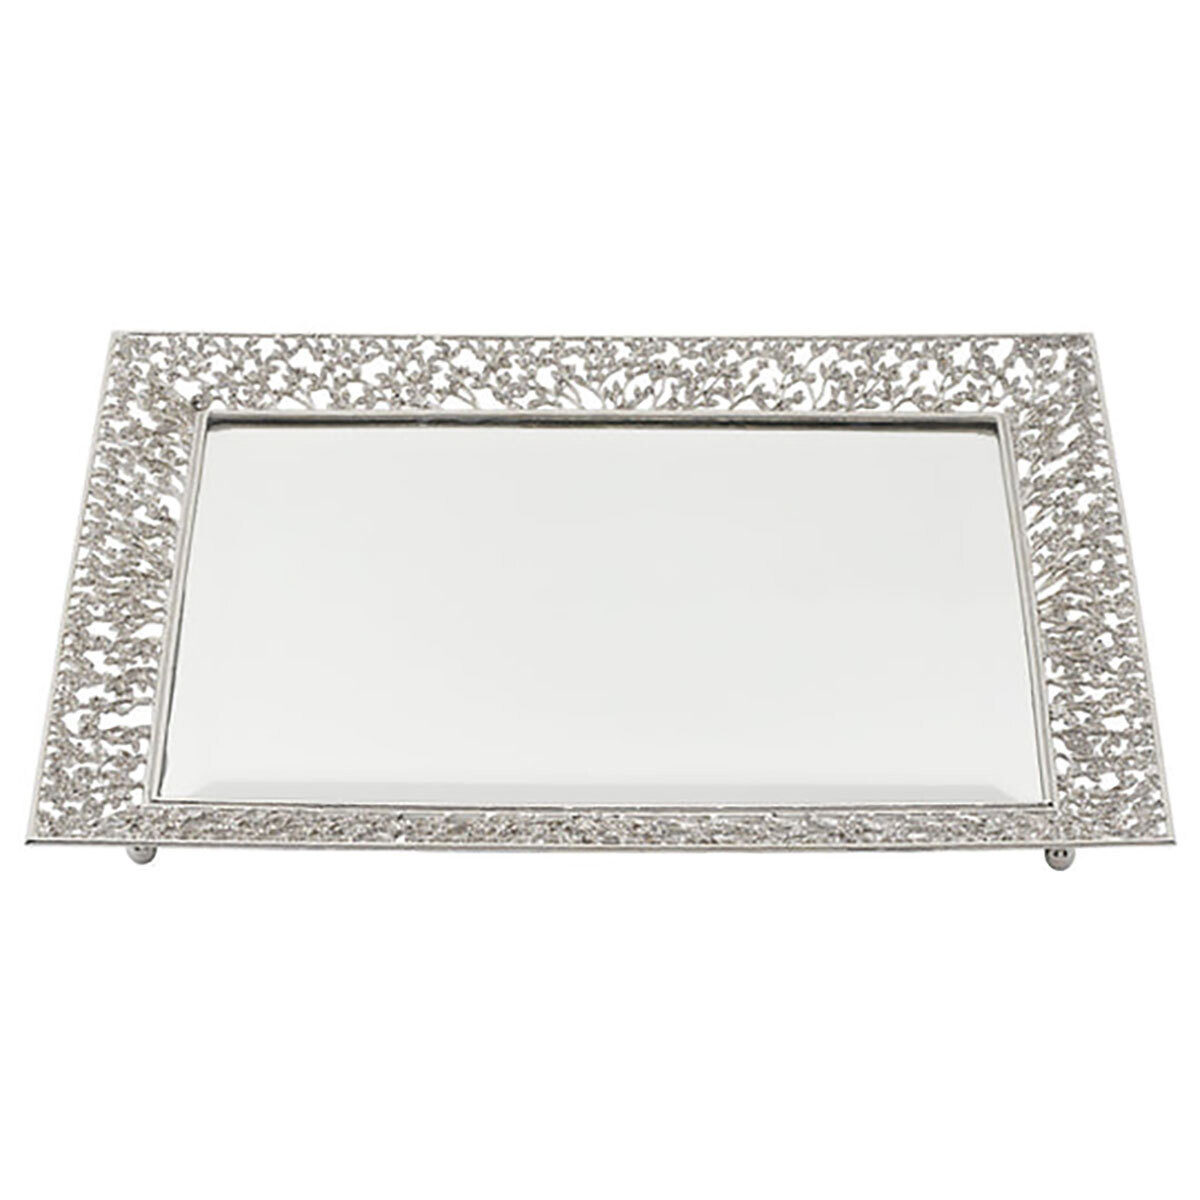 Olivia Riegel Silver Isadora Beveled Mirror Tray VT2203